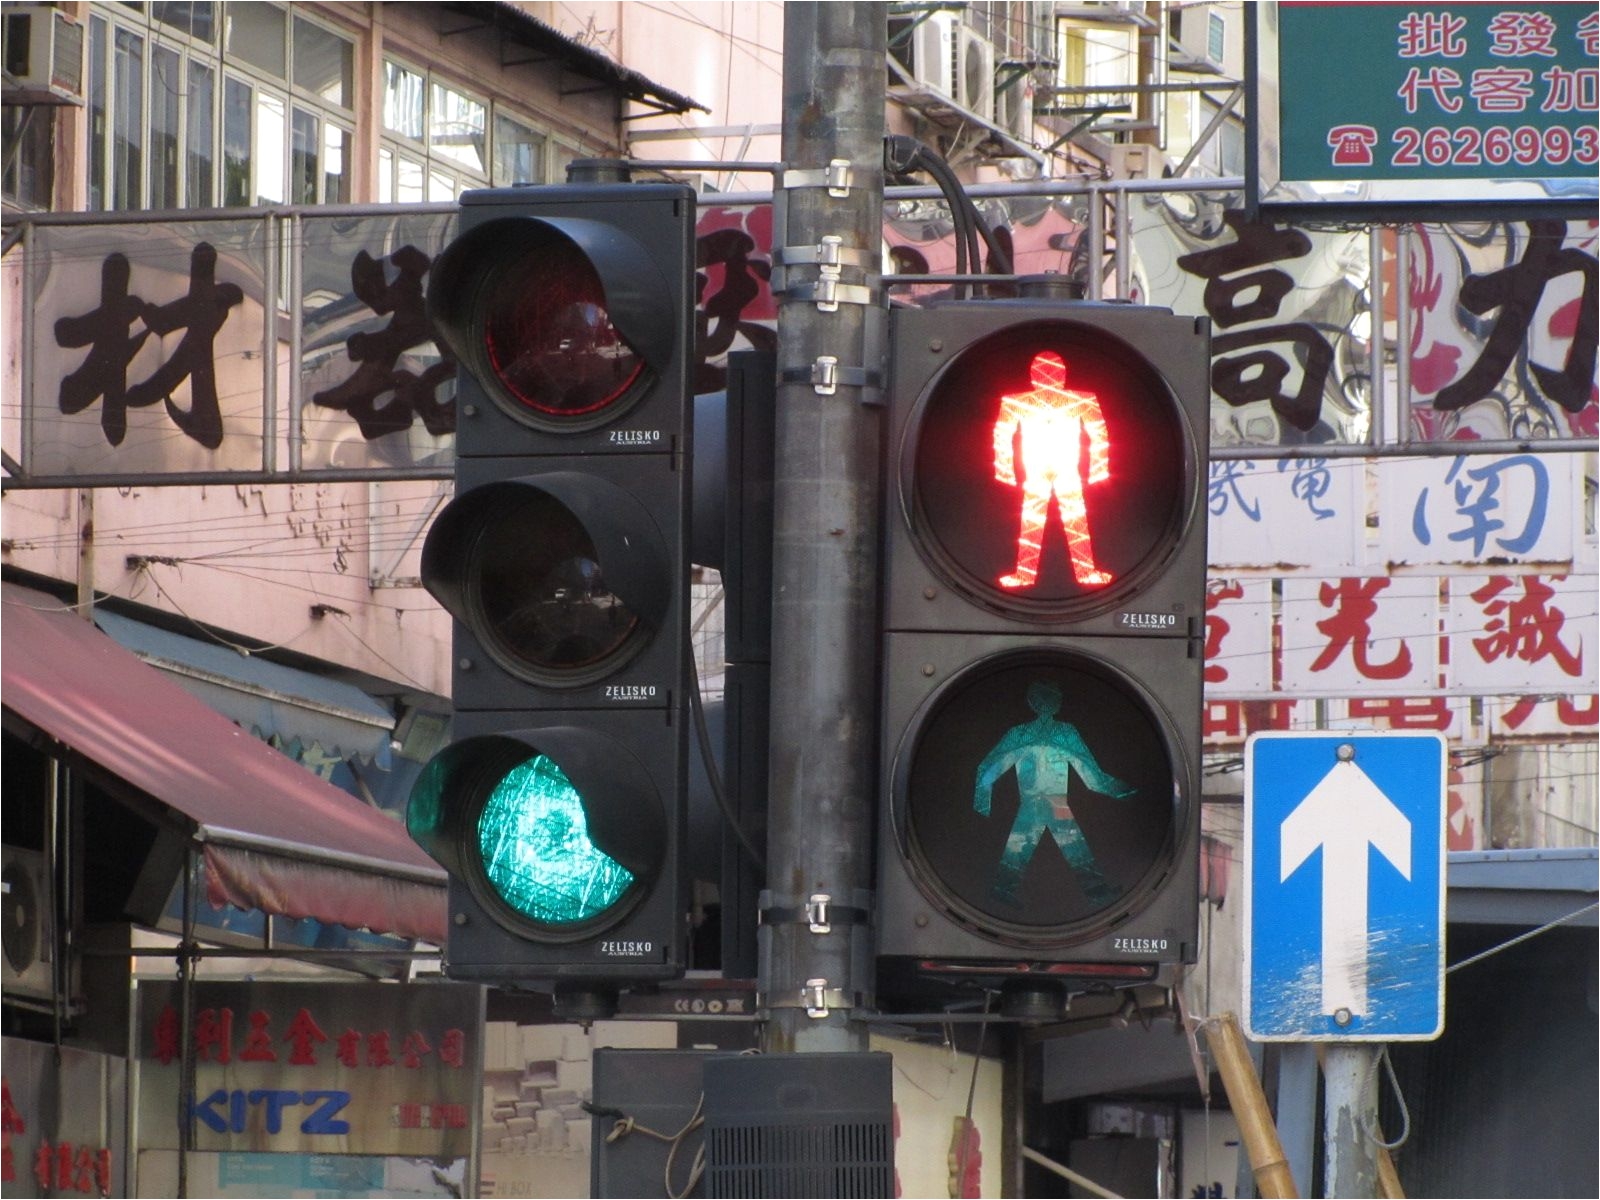 traffic light traffic light hong kong flag semaphore